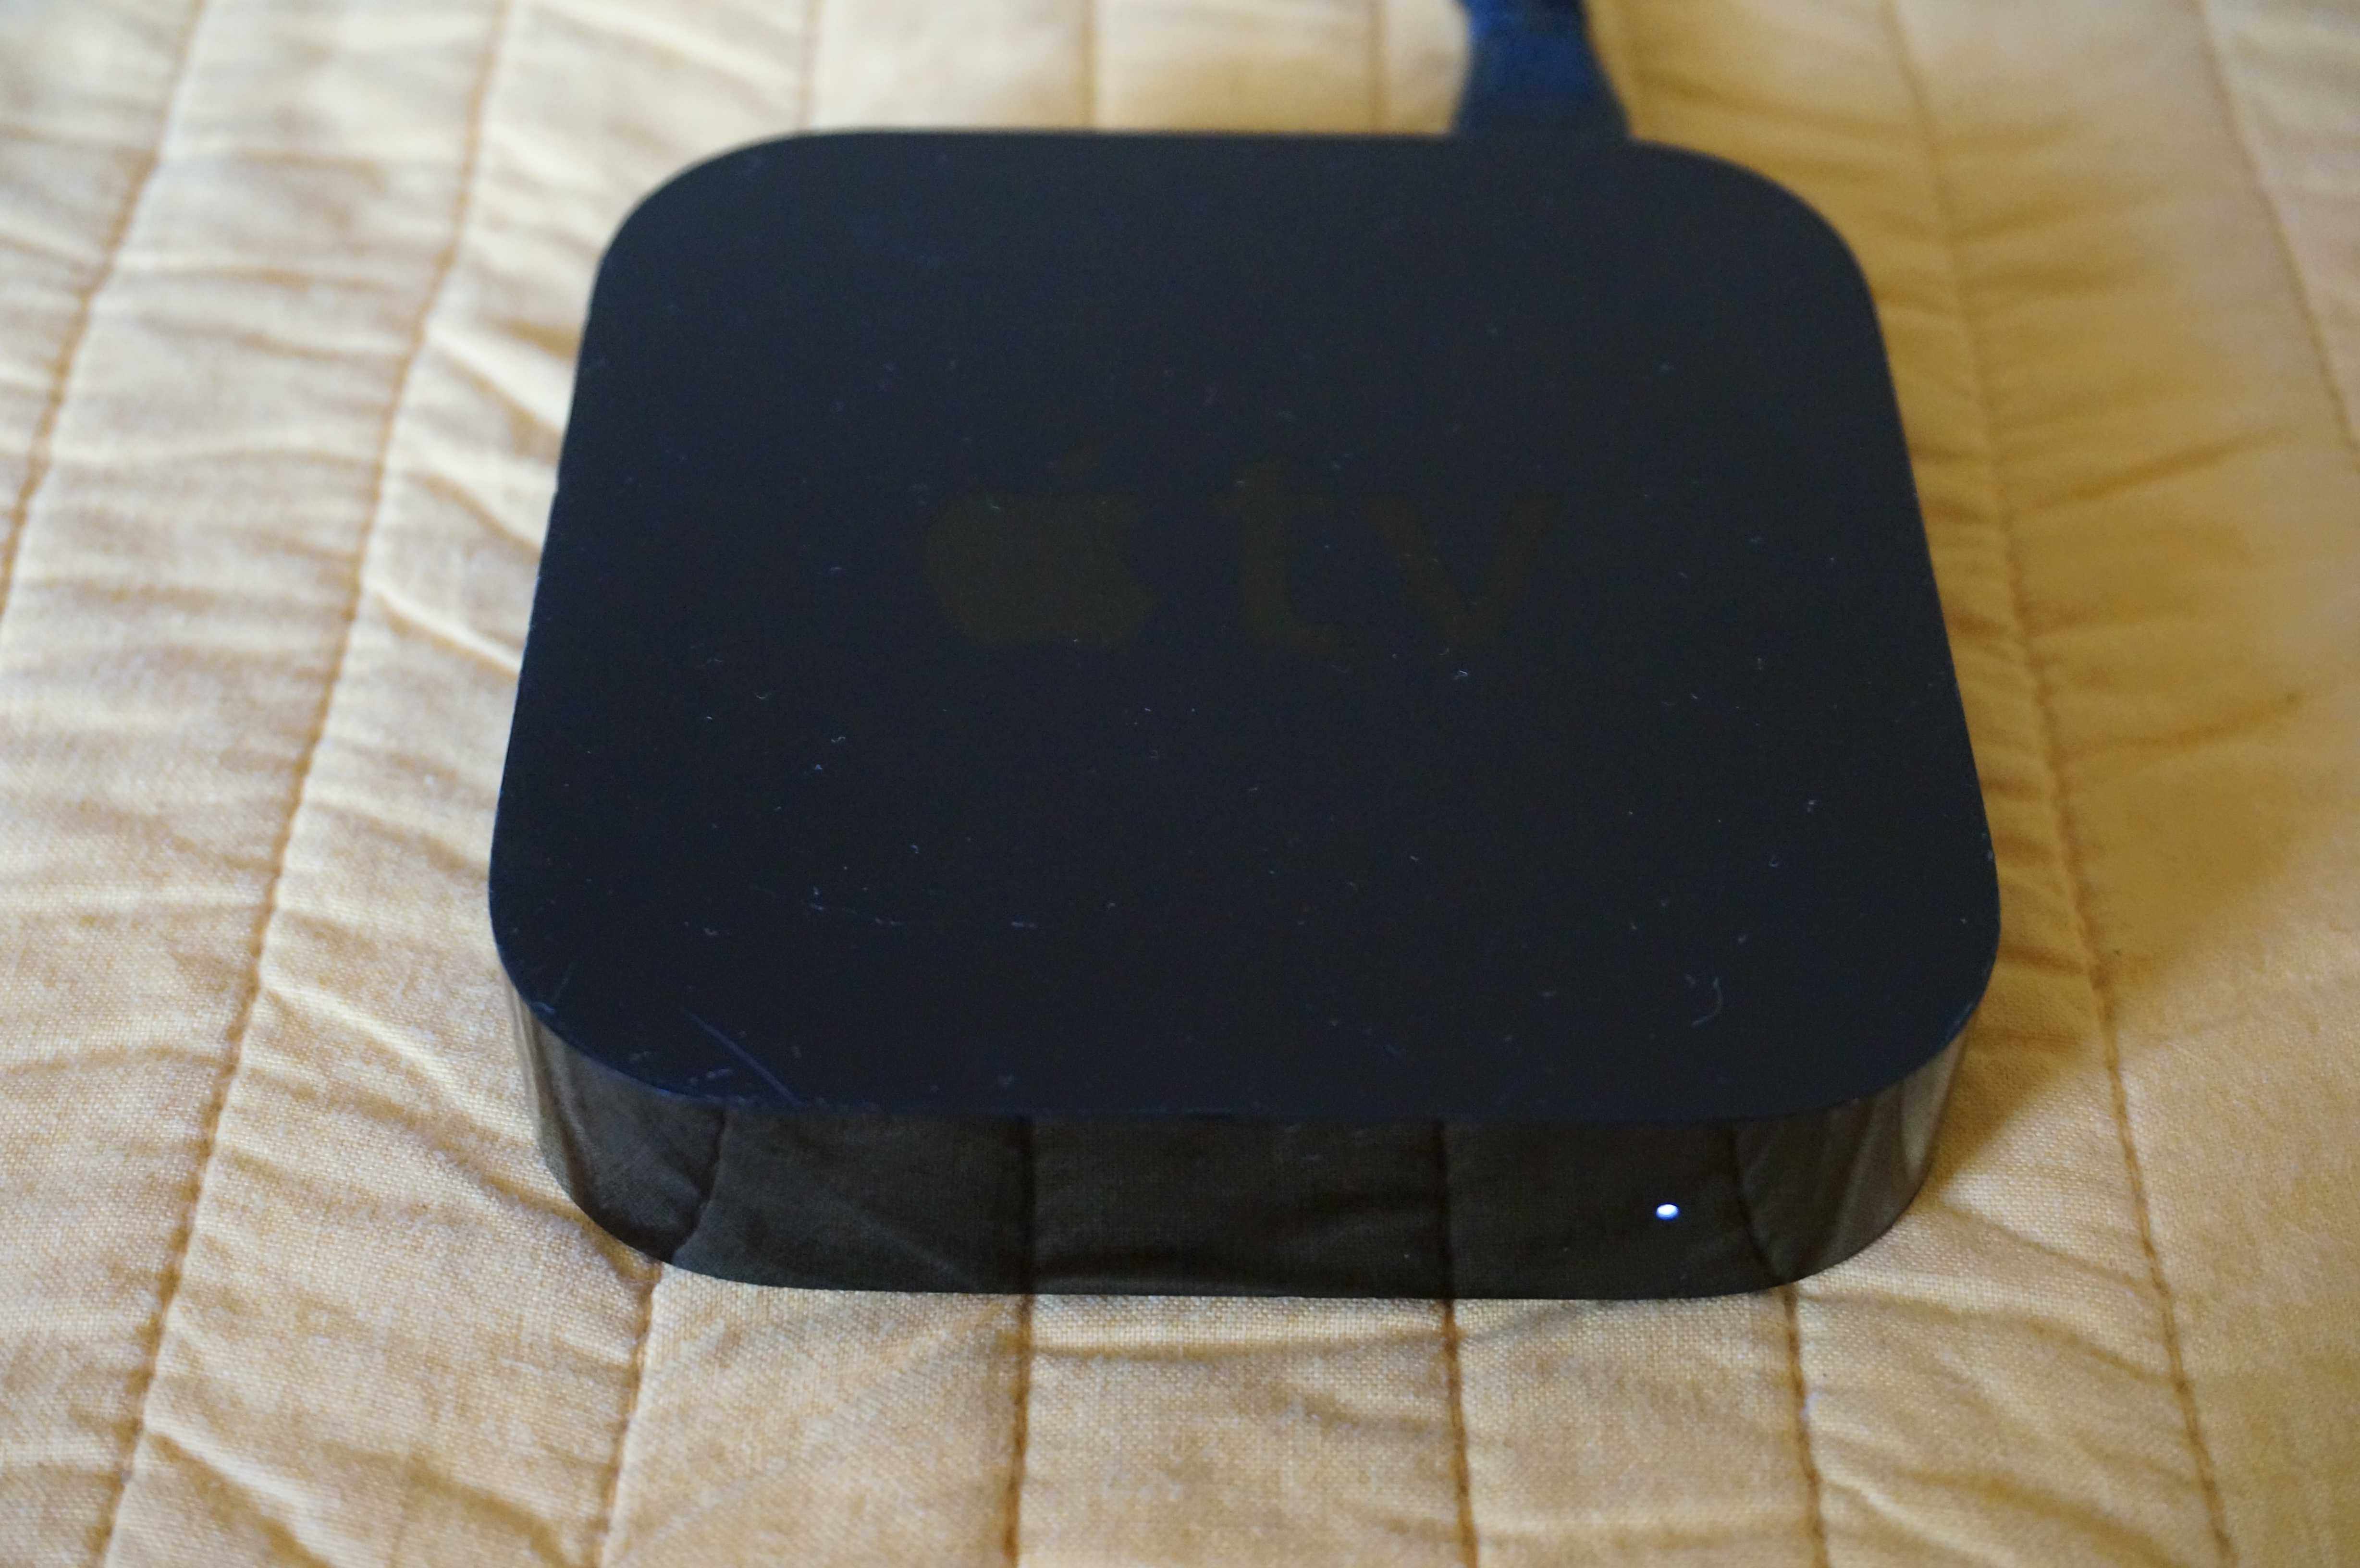 Apple TV modelo A1469  3rd generation com comando